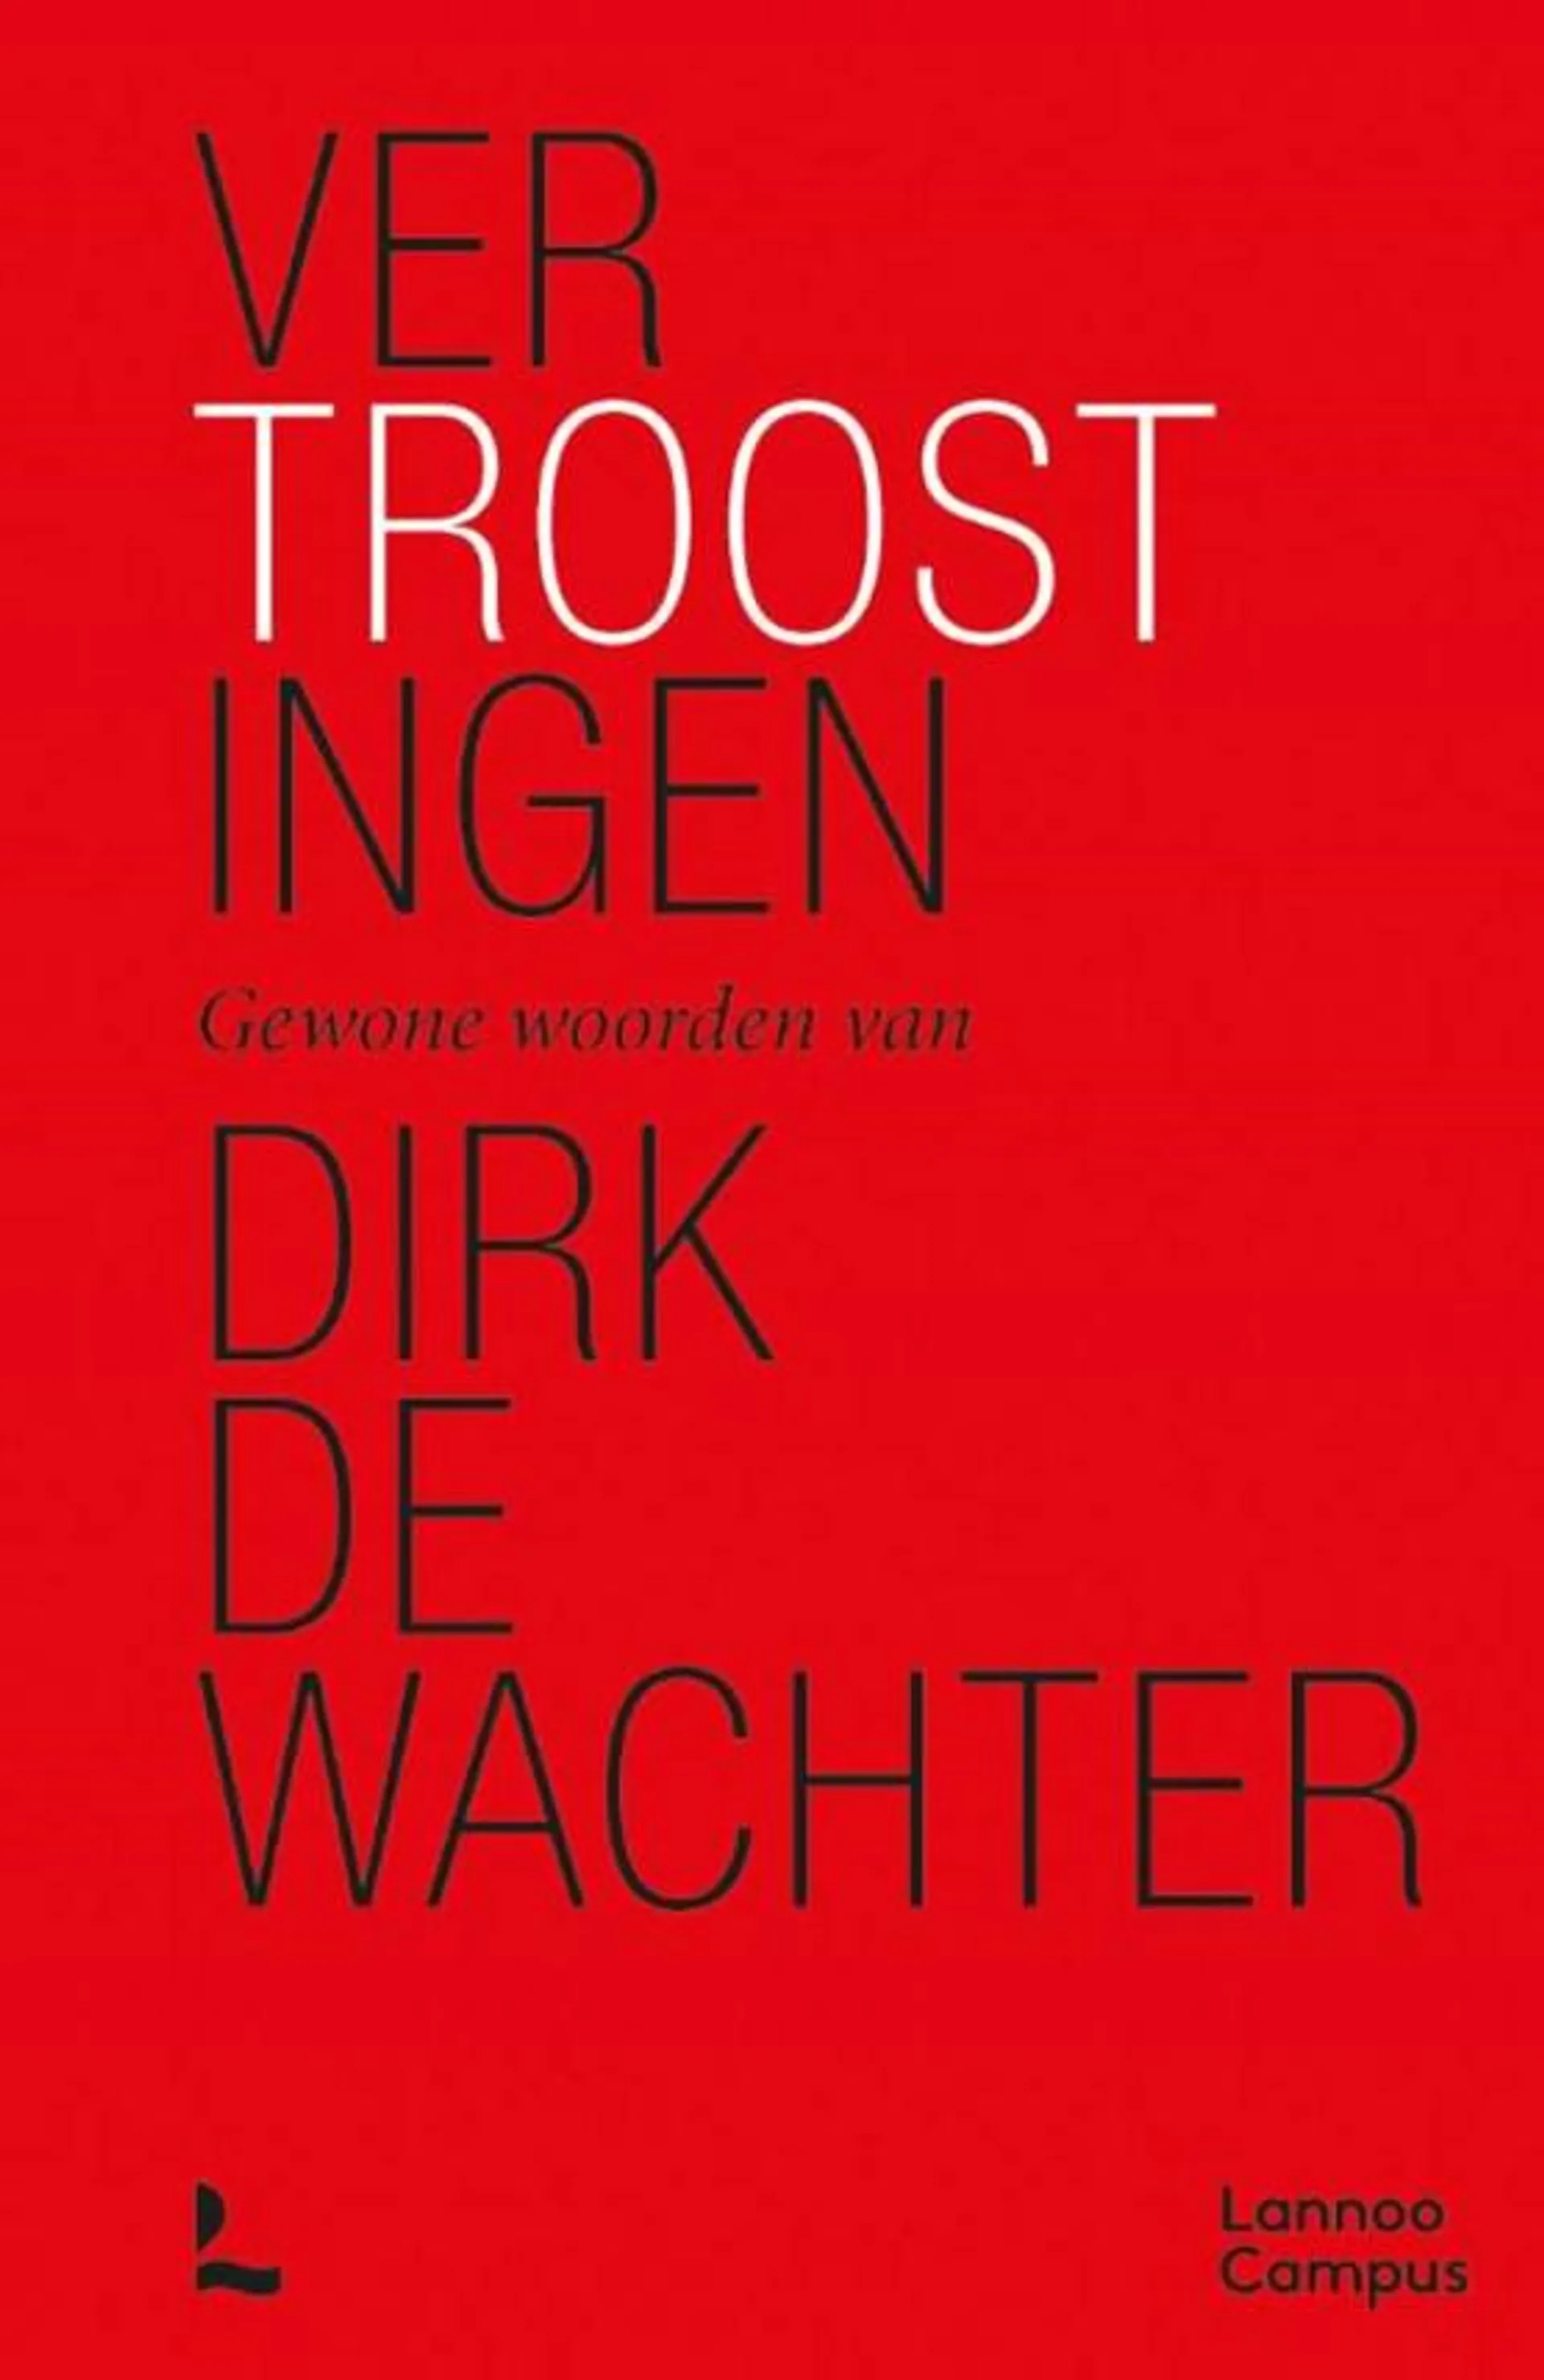 Gewone woorden van Dirk De Wachter